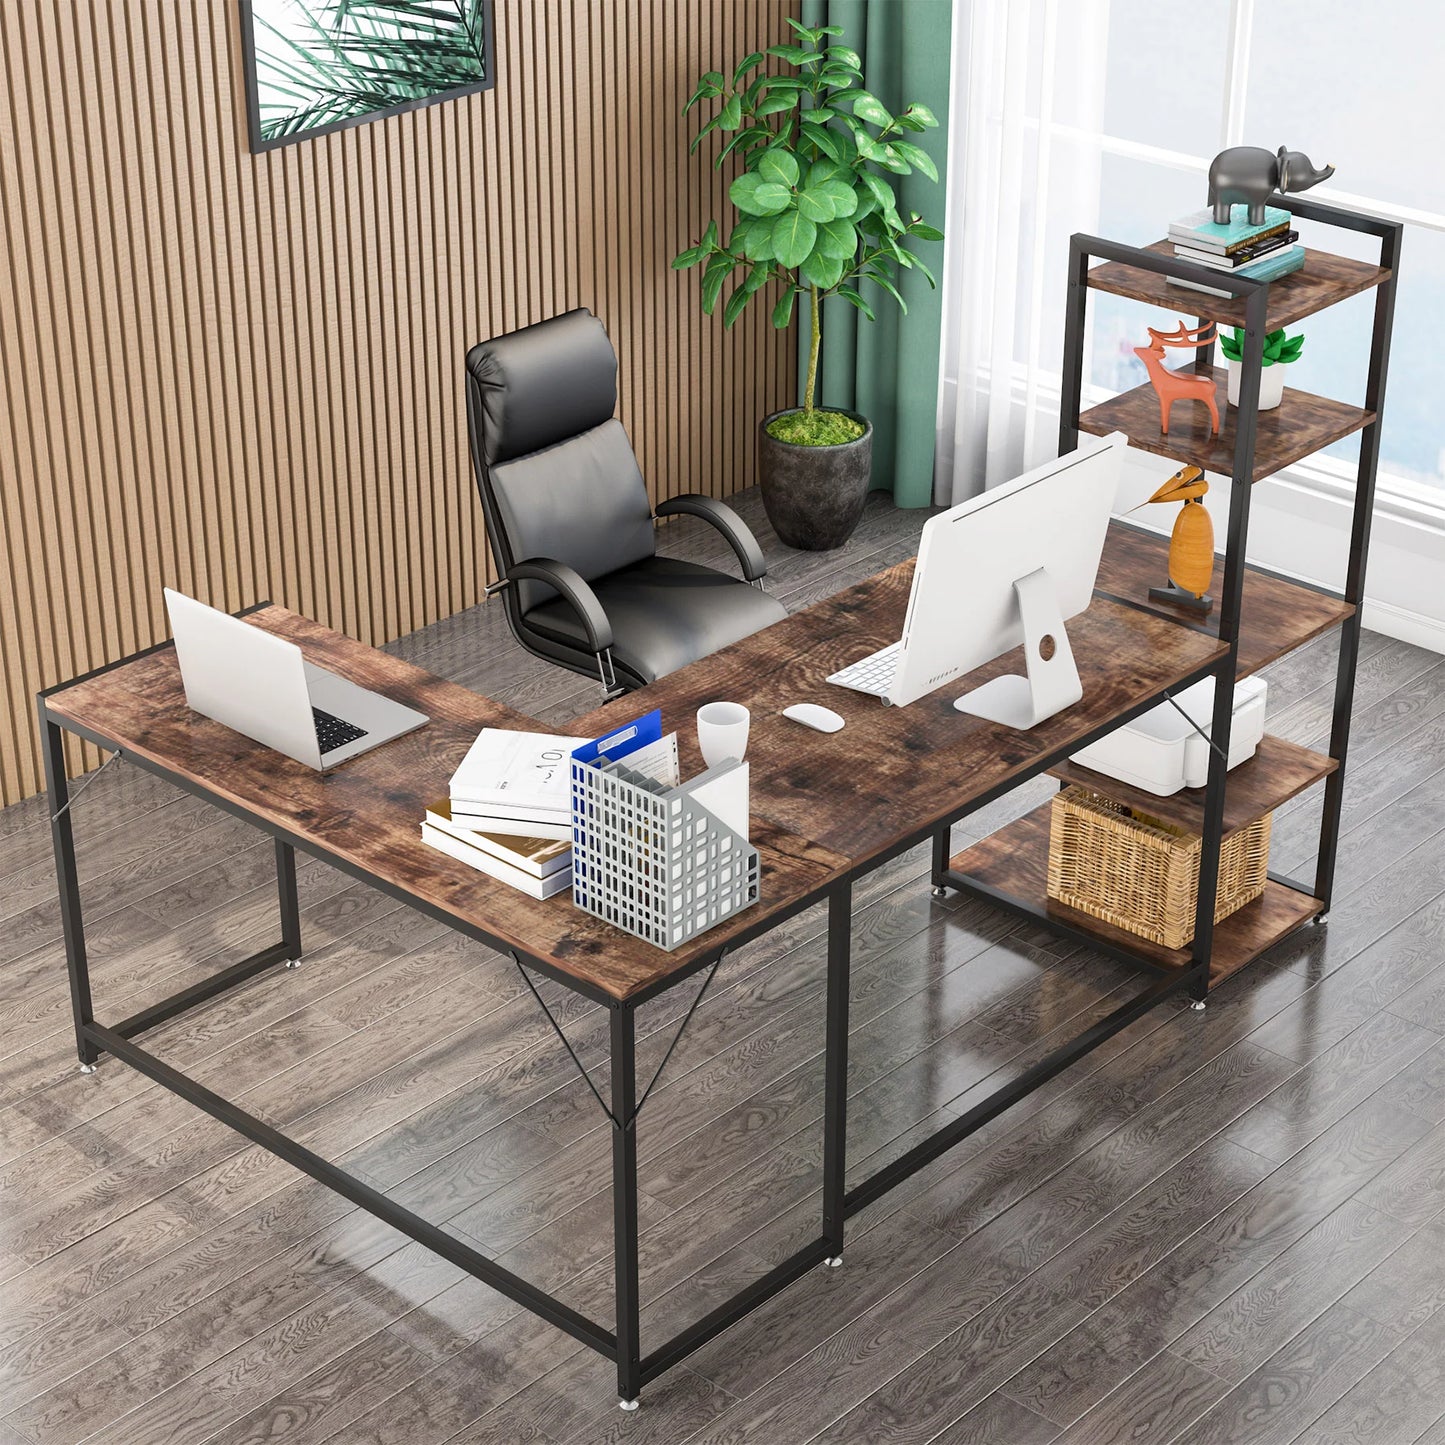 L-Shaped Desk, Reversible Corner Computer Desk with 5 Tier Shelves